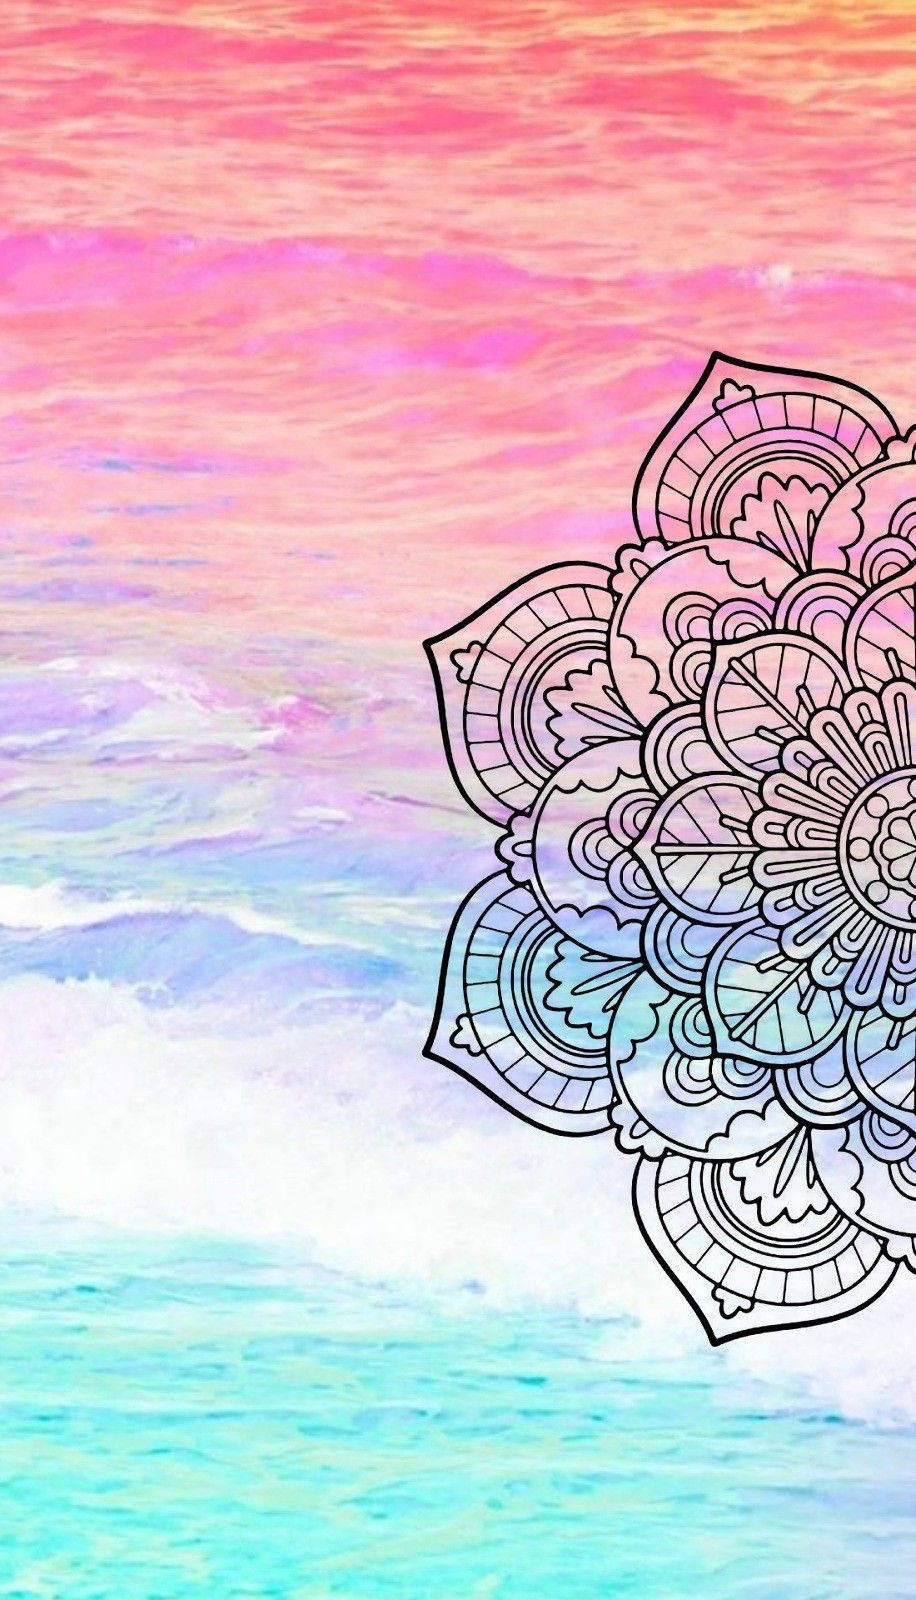 Mandala On Pink Background.